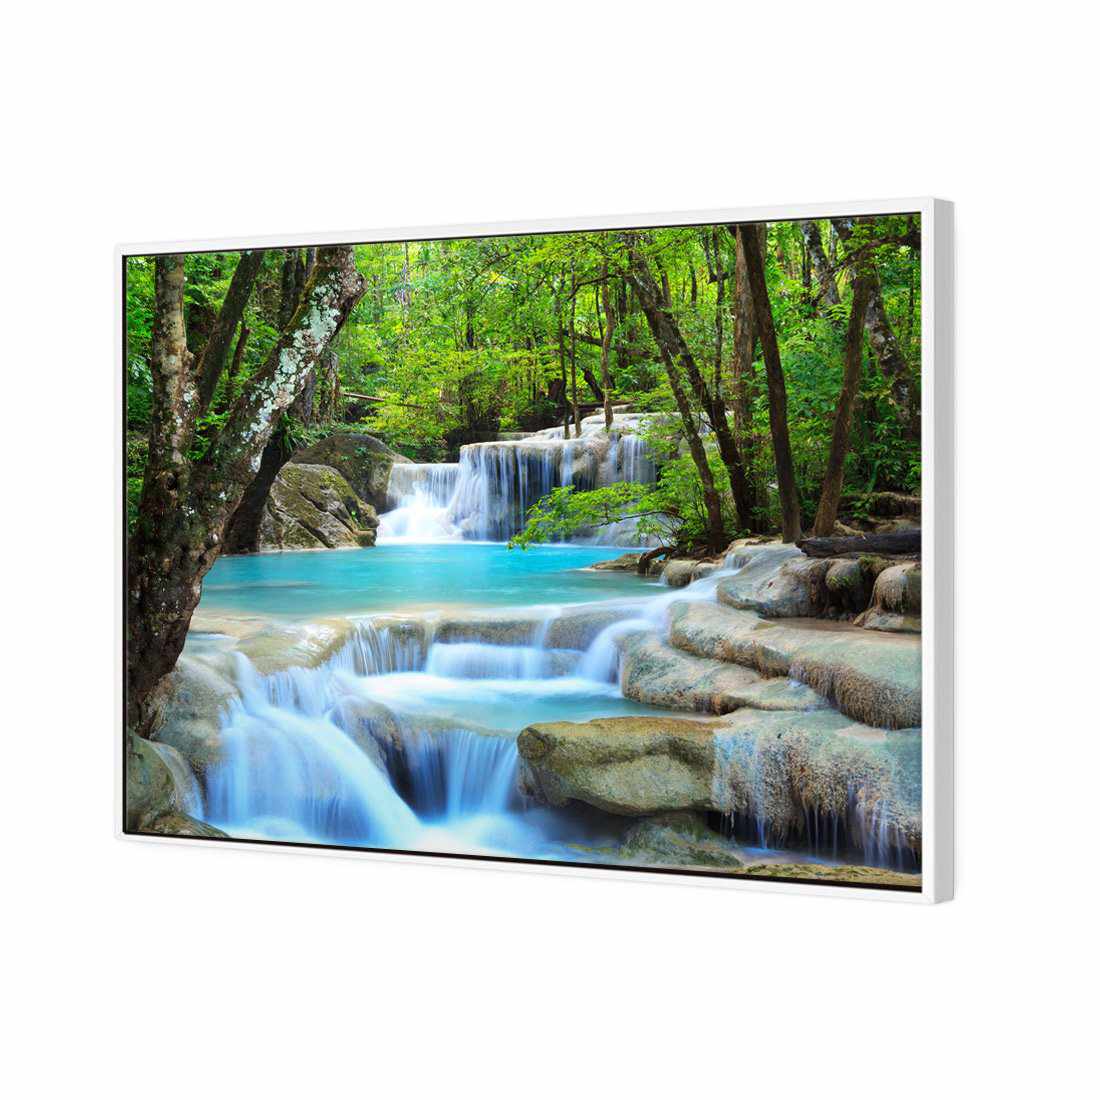 Soft Waterfalls Canvas Art-Canvas-Wall Art Designs-45x30cm-Canvas - White Frame-Wall Art Designs